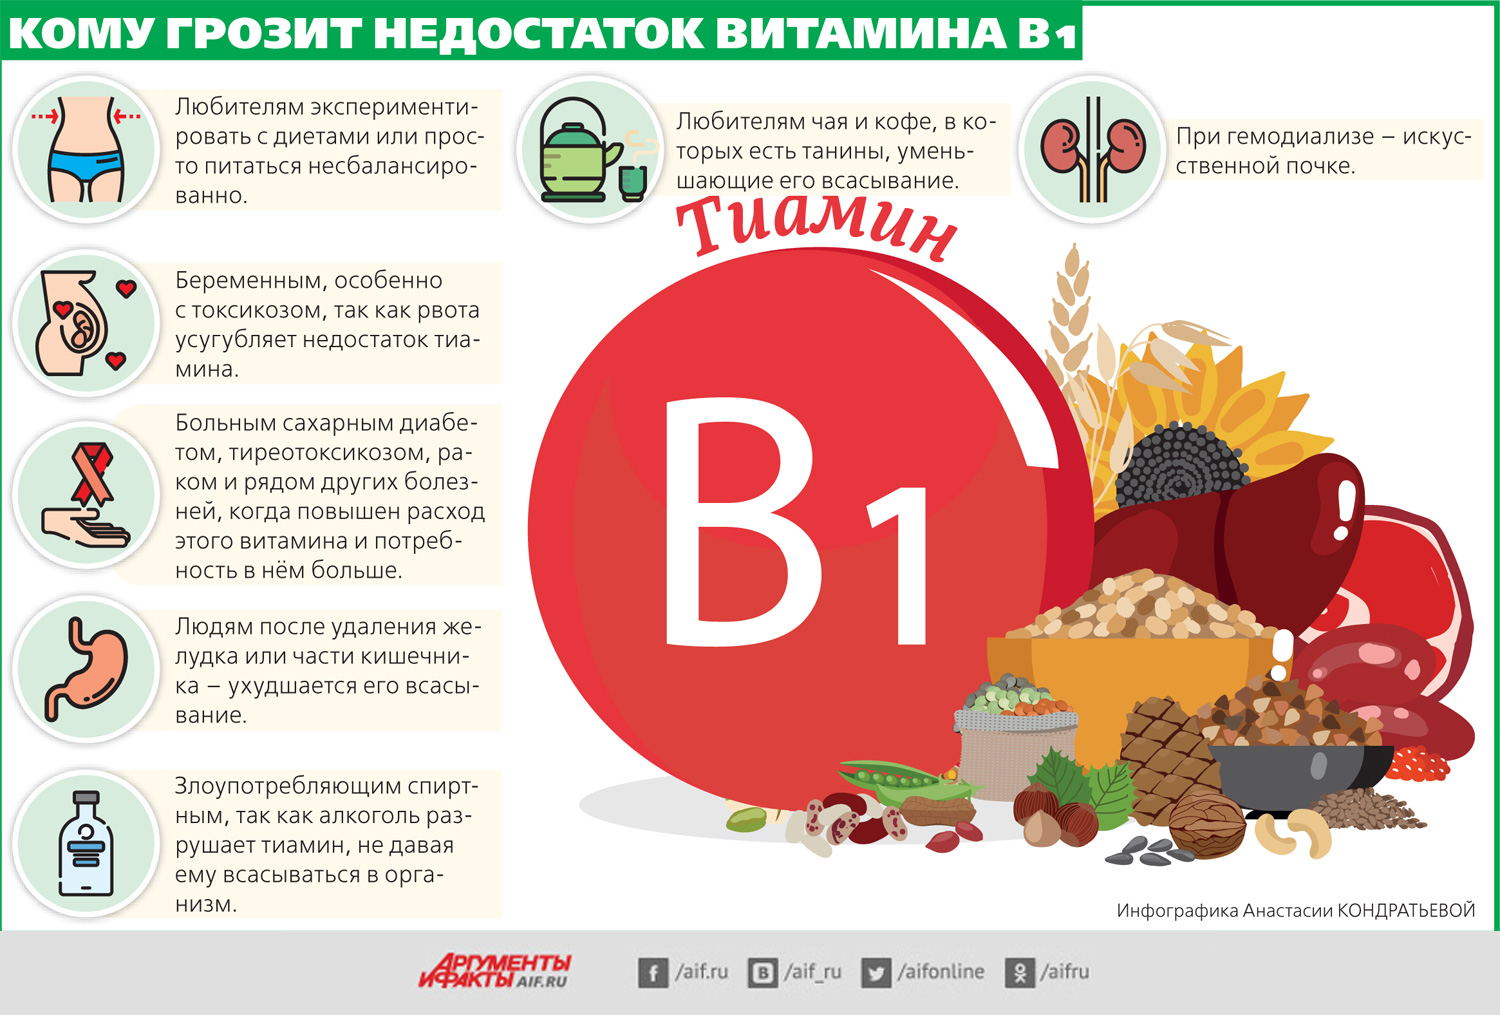 Реклама сидра может содержать информацию о витаминах. Витамин в1 дефицит болезни. Недостаток витамина b1. Симптомы витамина b1. Признаки недостатка витамина b1.